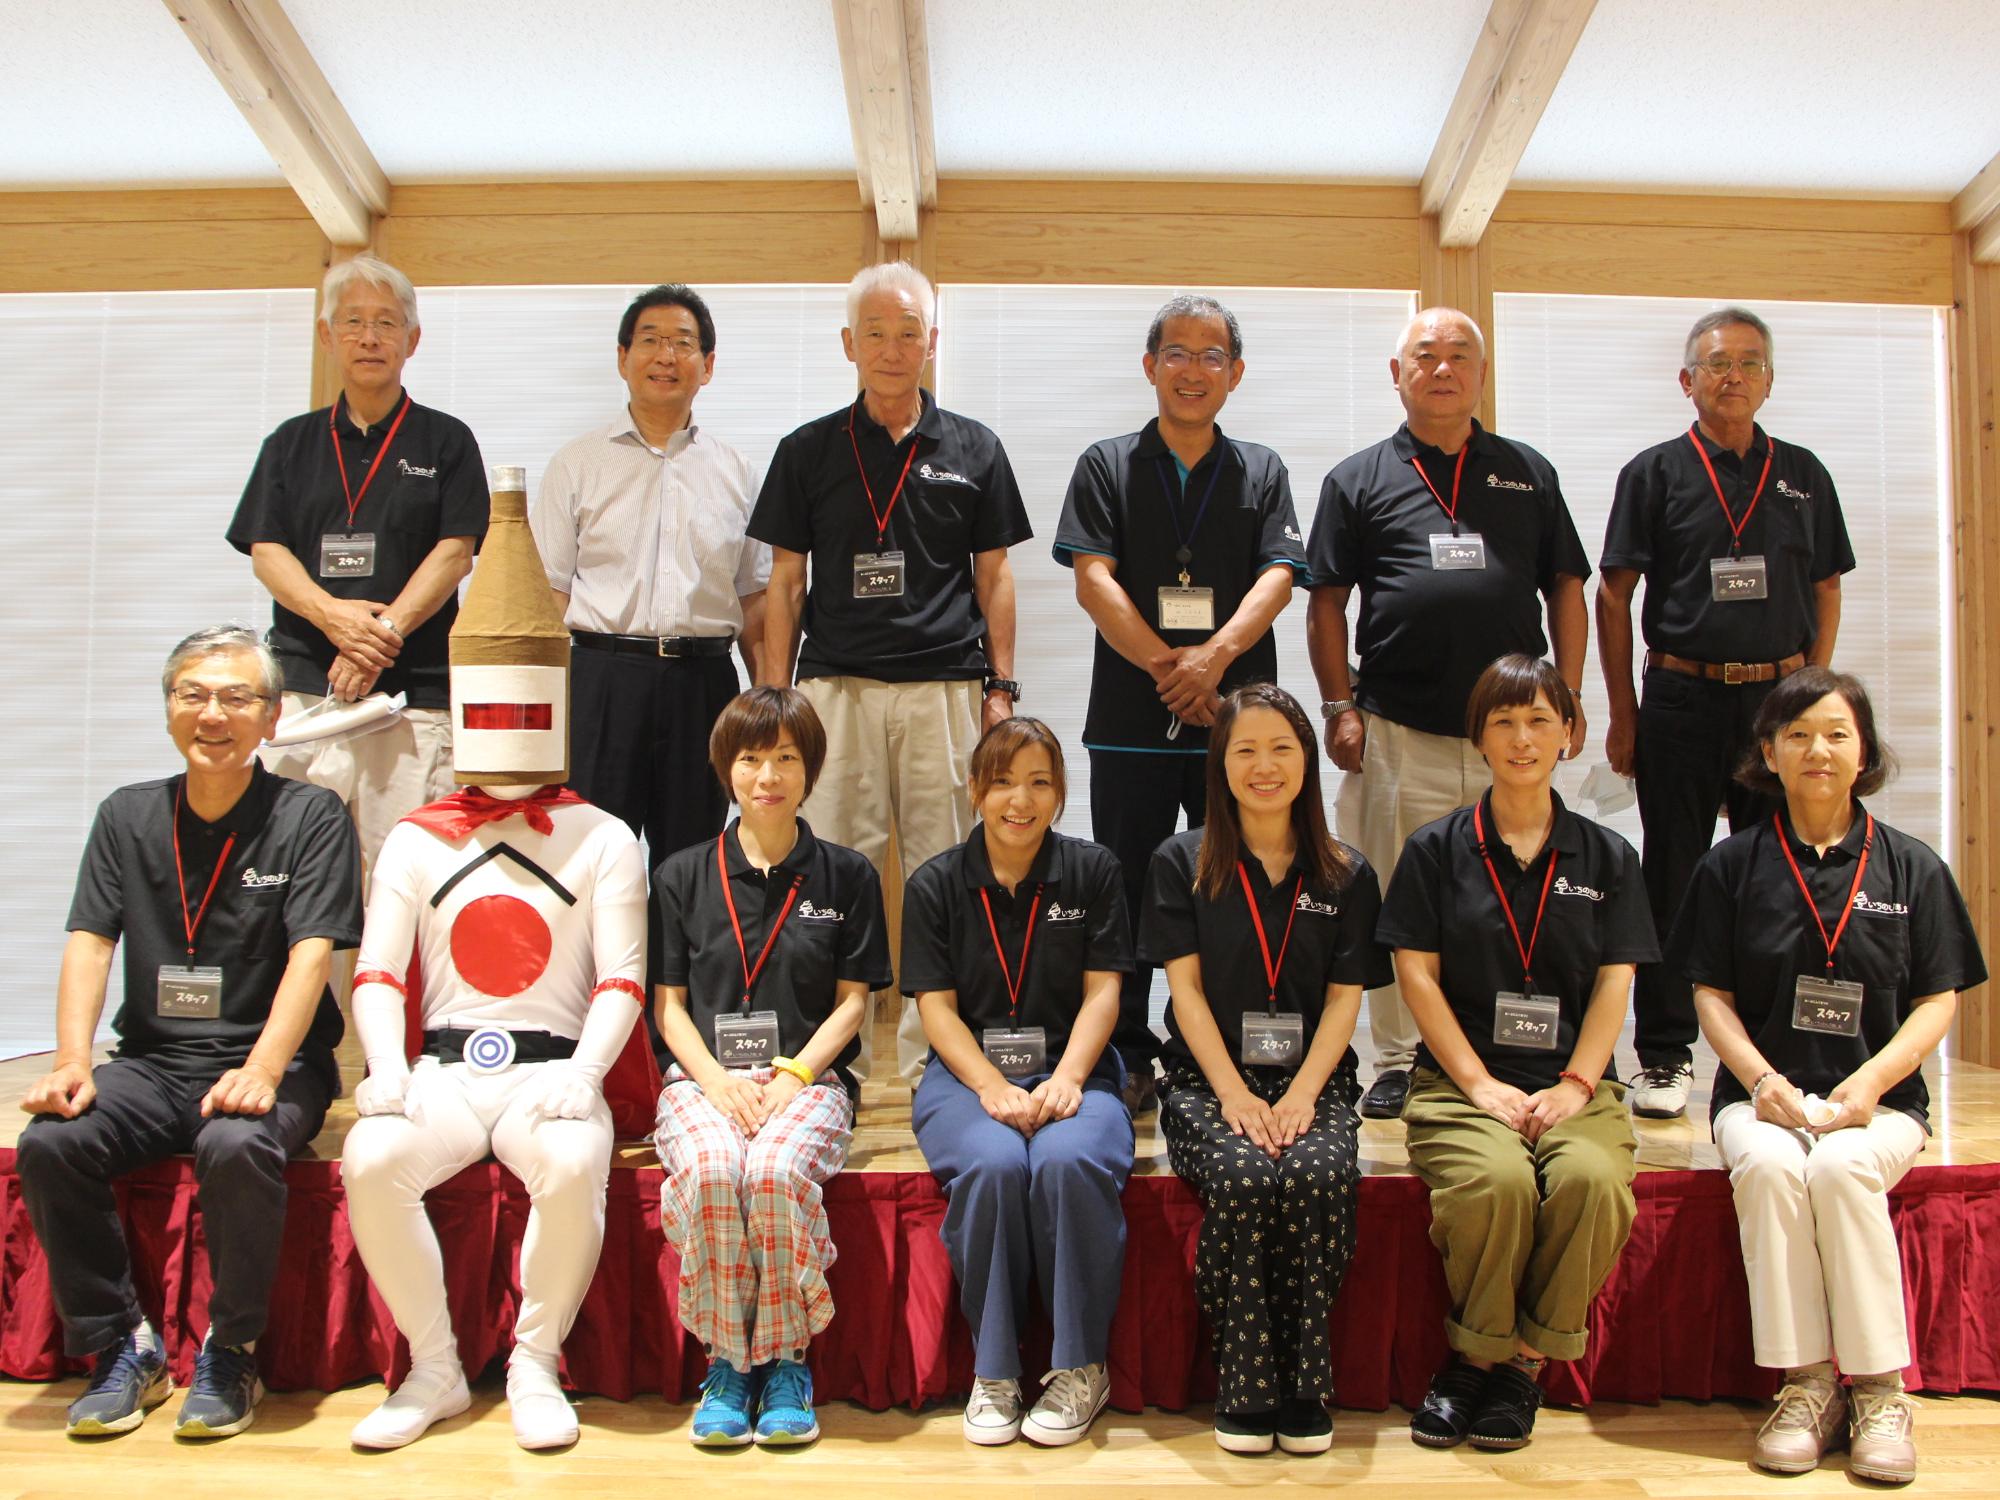 上段左から二番目に市長、下段左から2番目に日本酒マンを迎え、運営検討協議会委員との集合写真